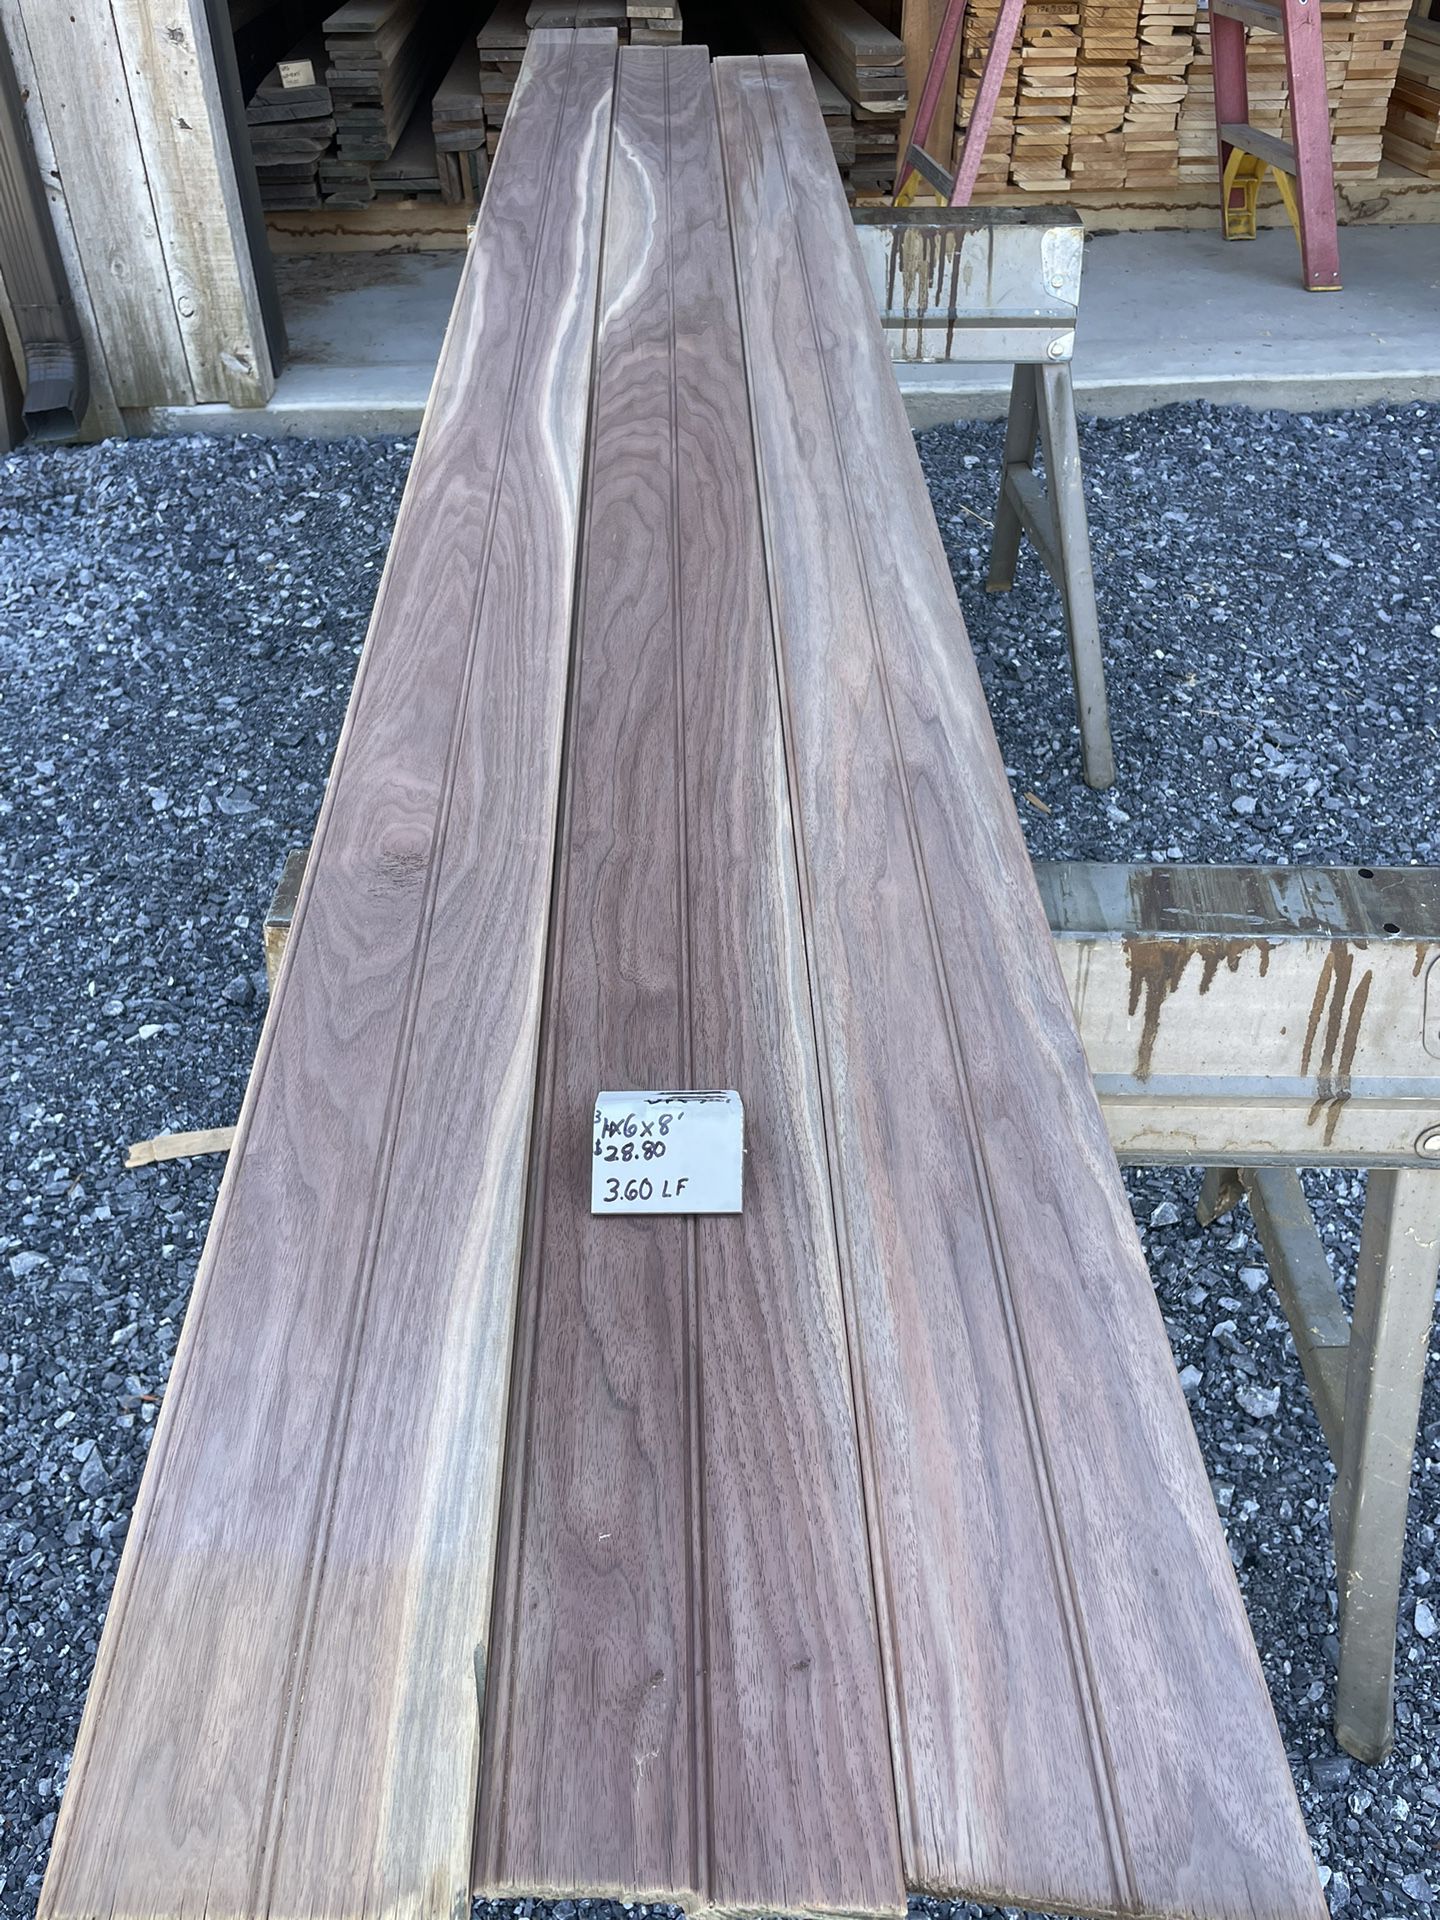 3/4x6x8 Beaded T&G Black Walnut Lumber